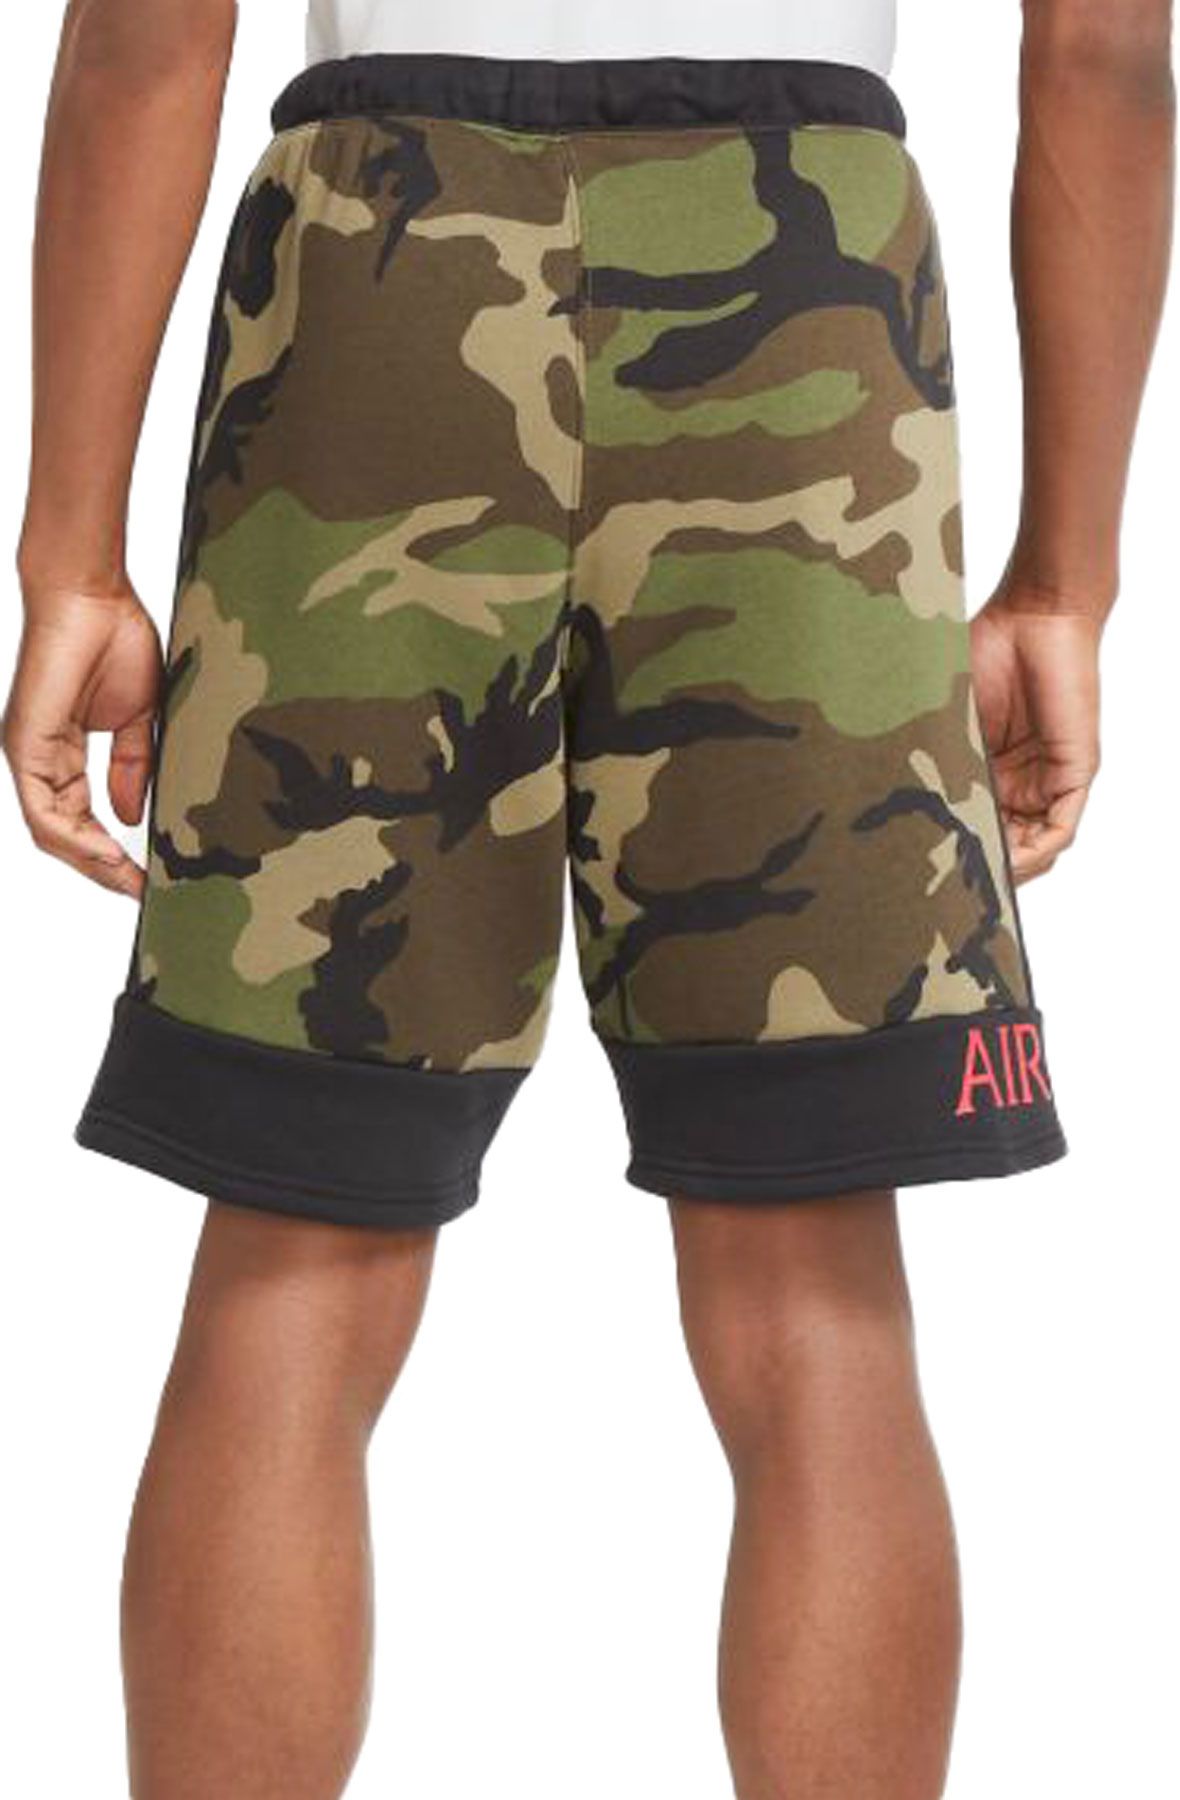 air jordan camo shorts